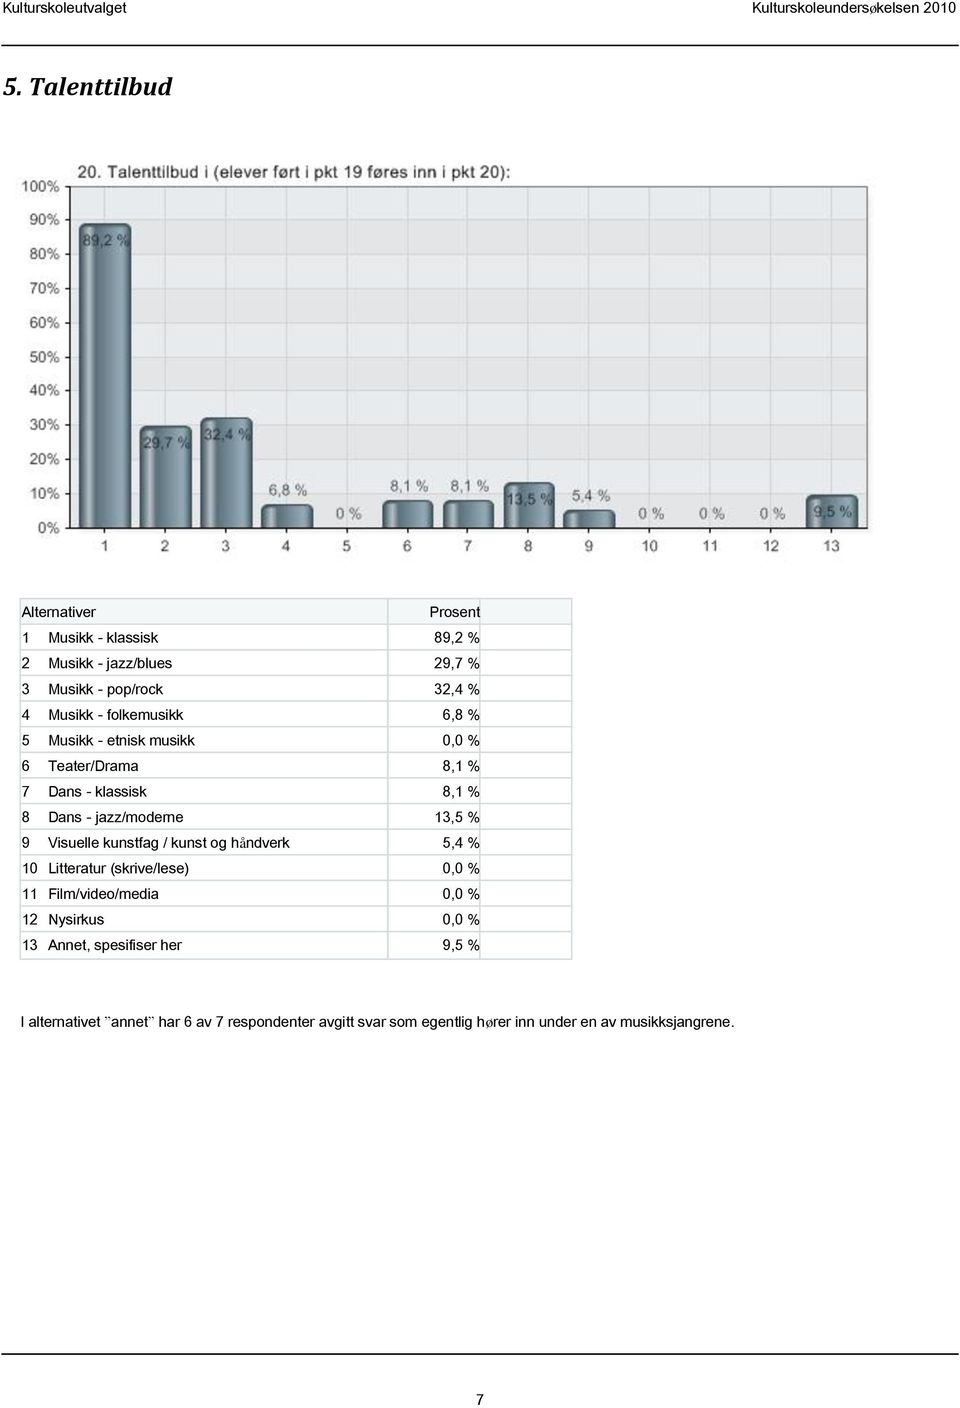 kunstfag / kunst og håndverk 5,4 % 10 Litteratur (skrive/lese) 0,0 % 11 Film/video/media 0,0 % 12 Nysirkus 0,0 % 13 Annet,